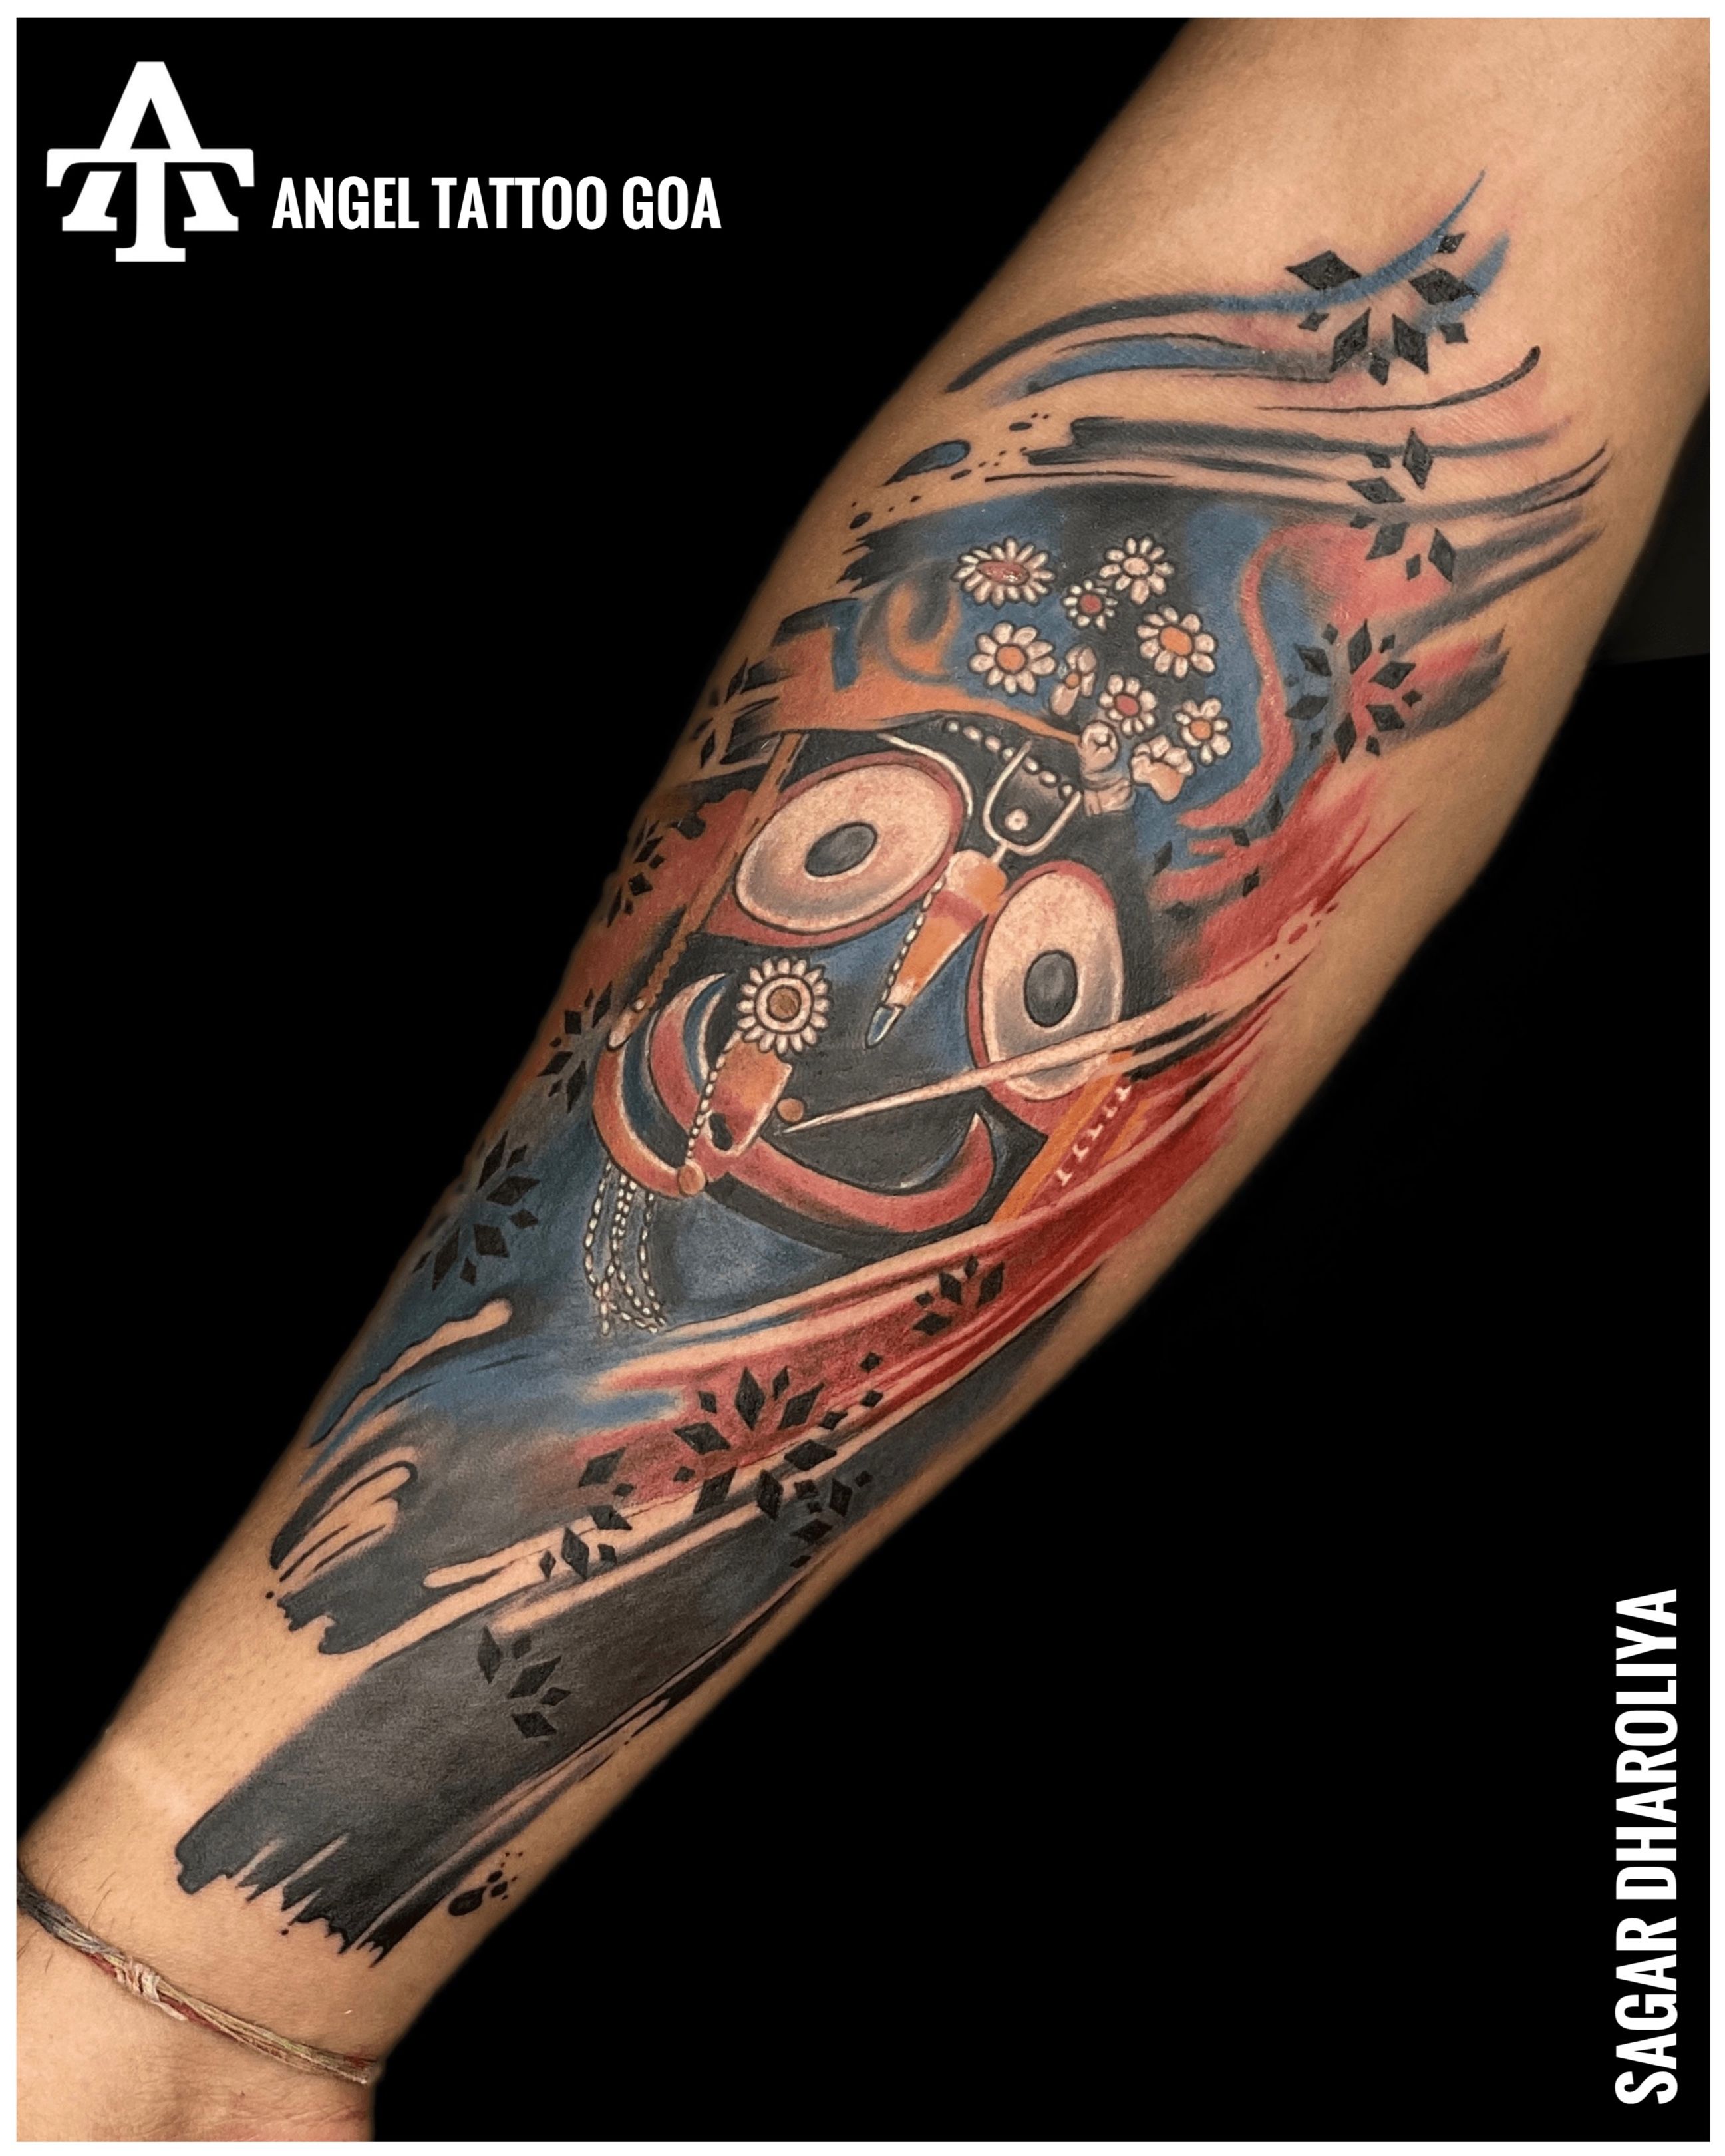 Tiny lord Jagannath | Hand tattoos, Cool tattoos, Barber tattoo